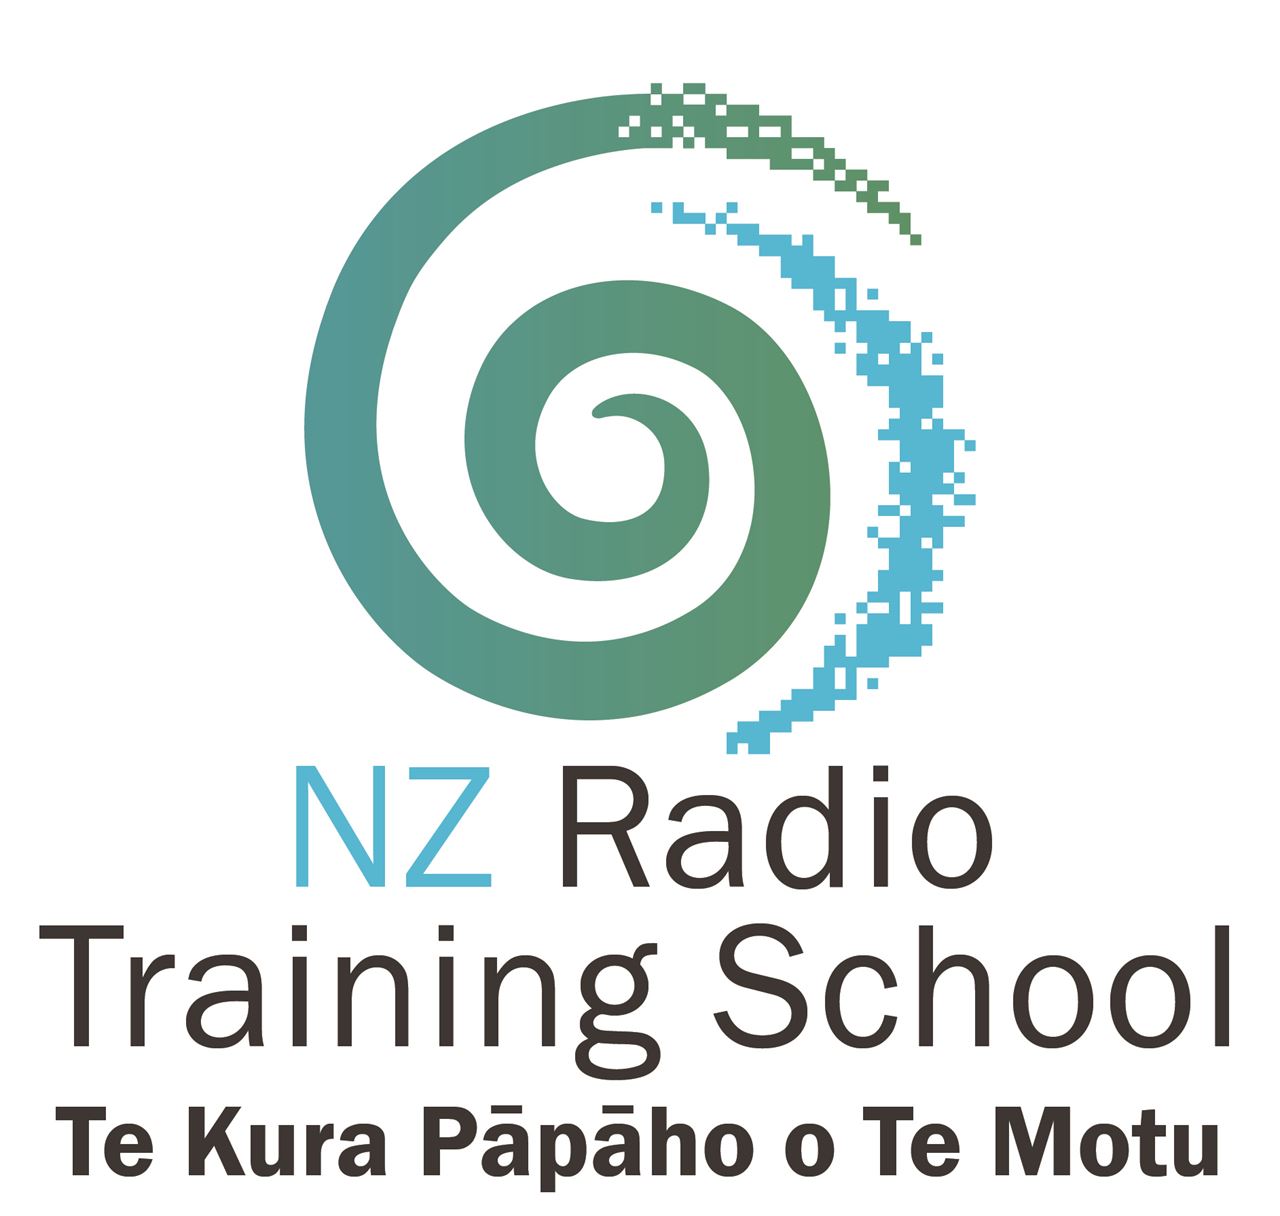 NZRTS is based at Te Whare Wānanga o Awanuiārangi Tāmaki Makaurau Campus